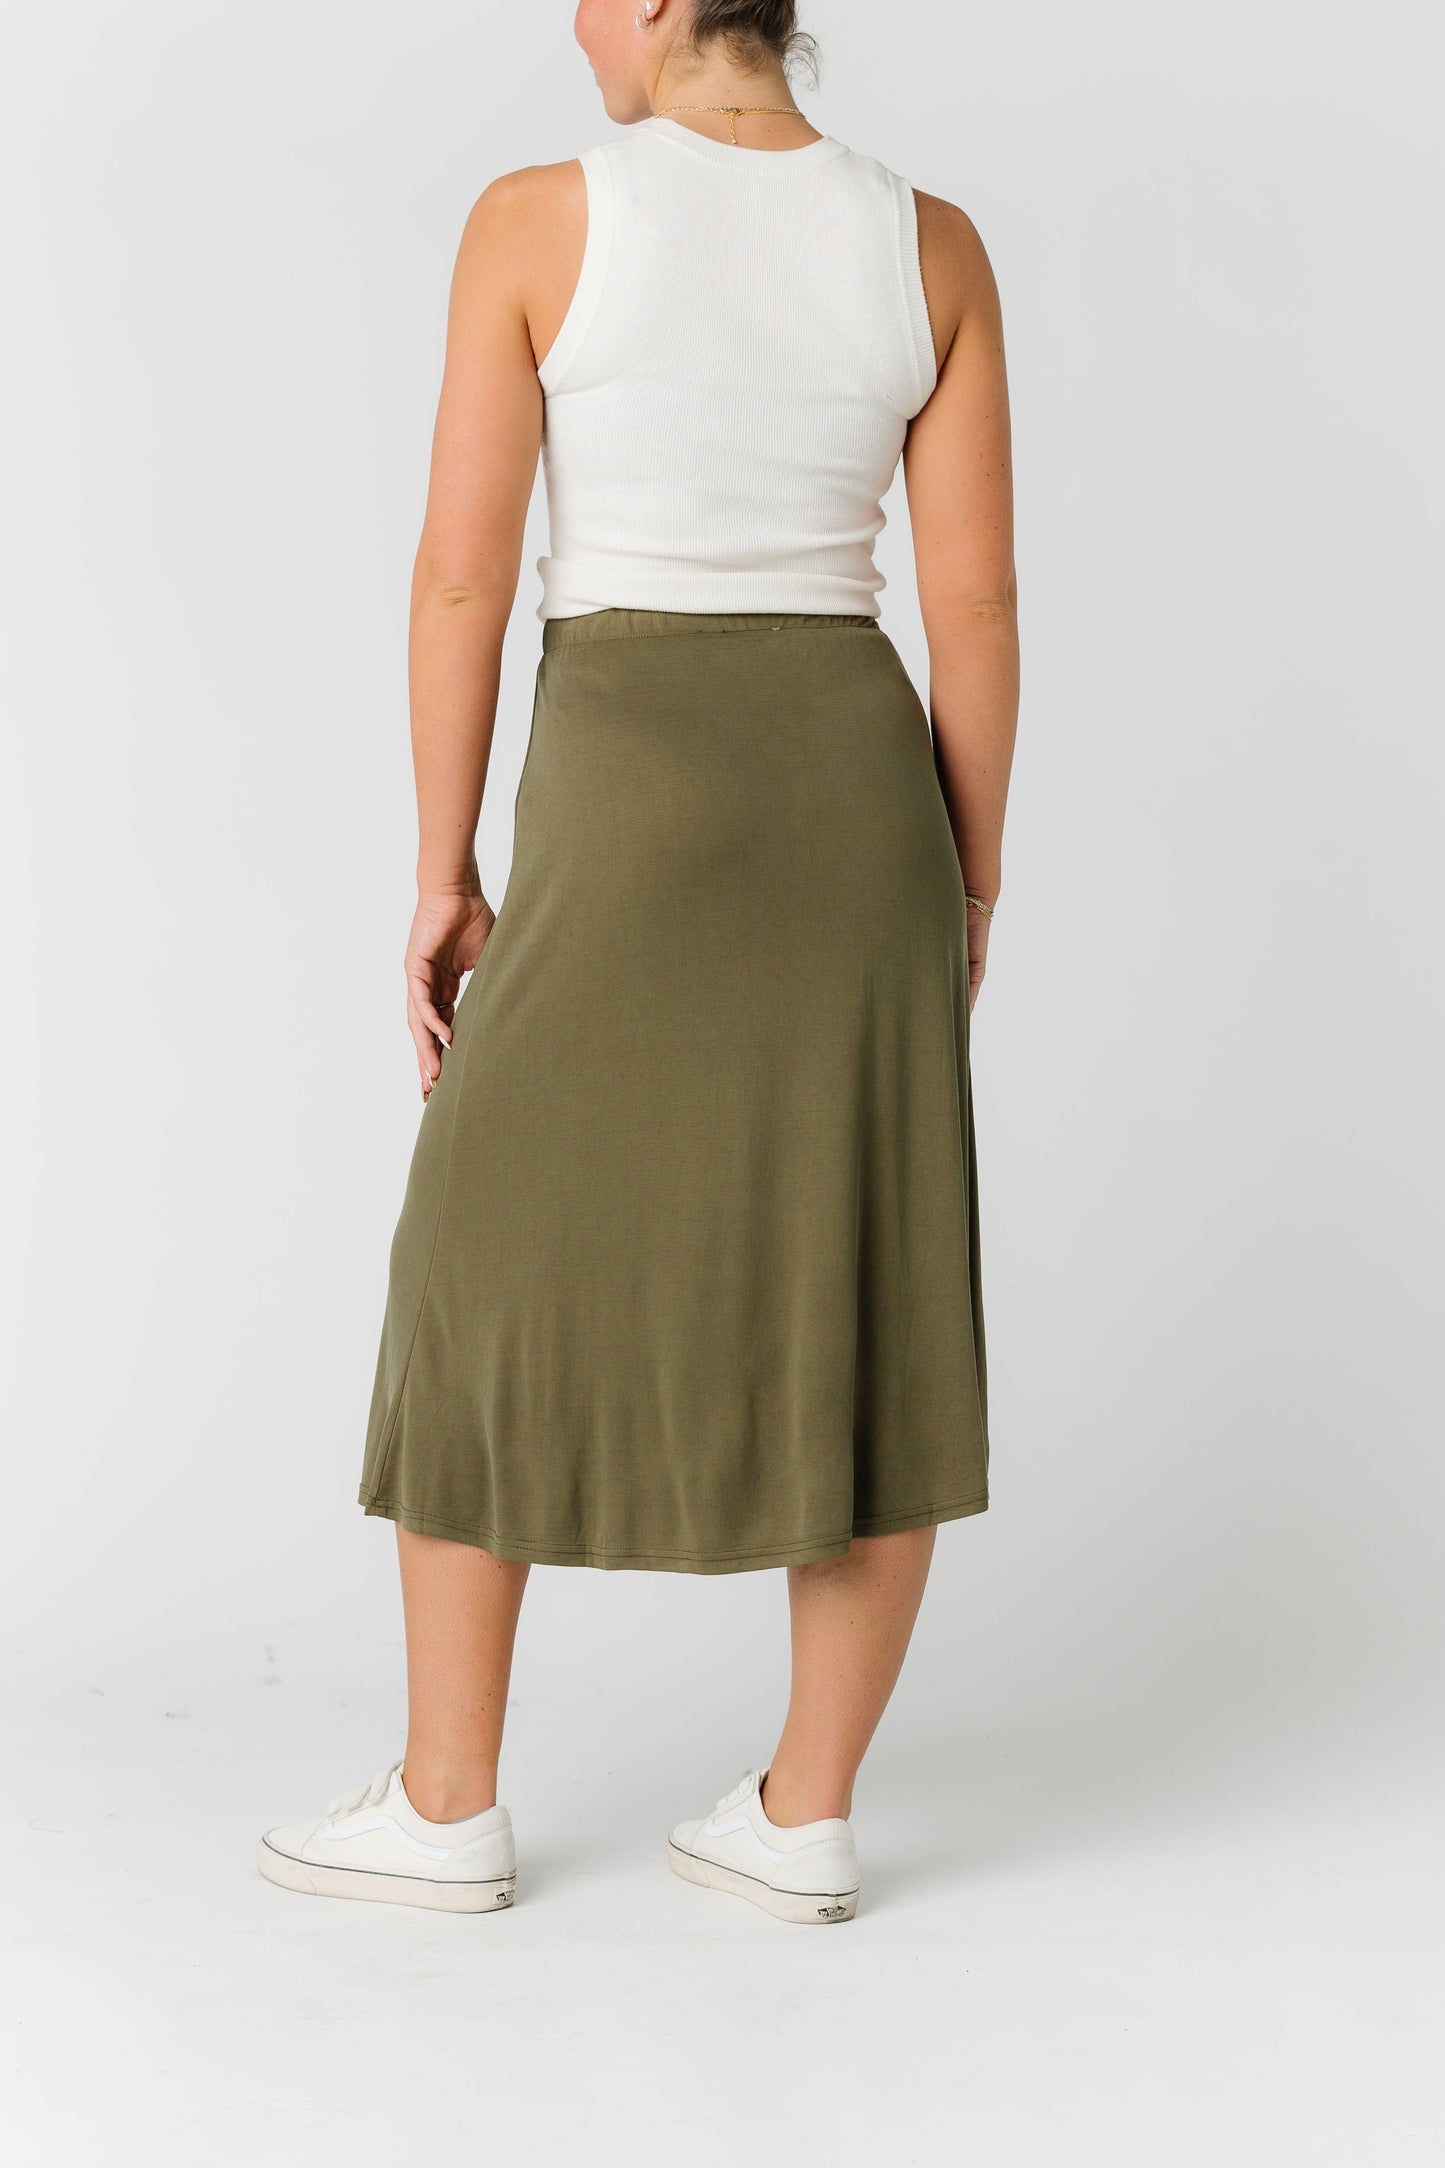 The Milena Skirt WOMEN'S SKIRTS Mod Ref 